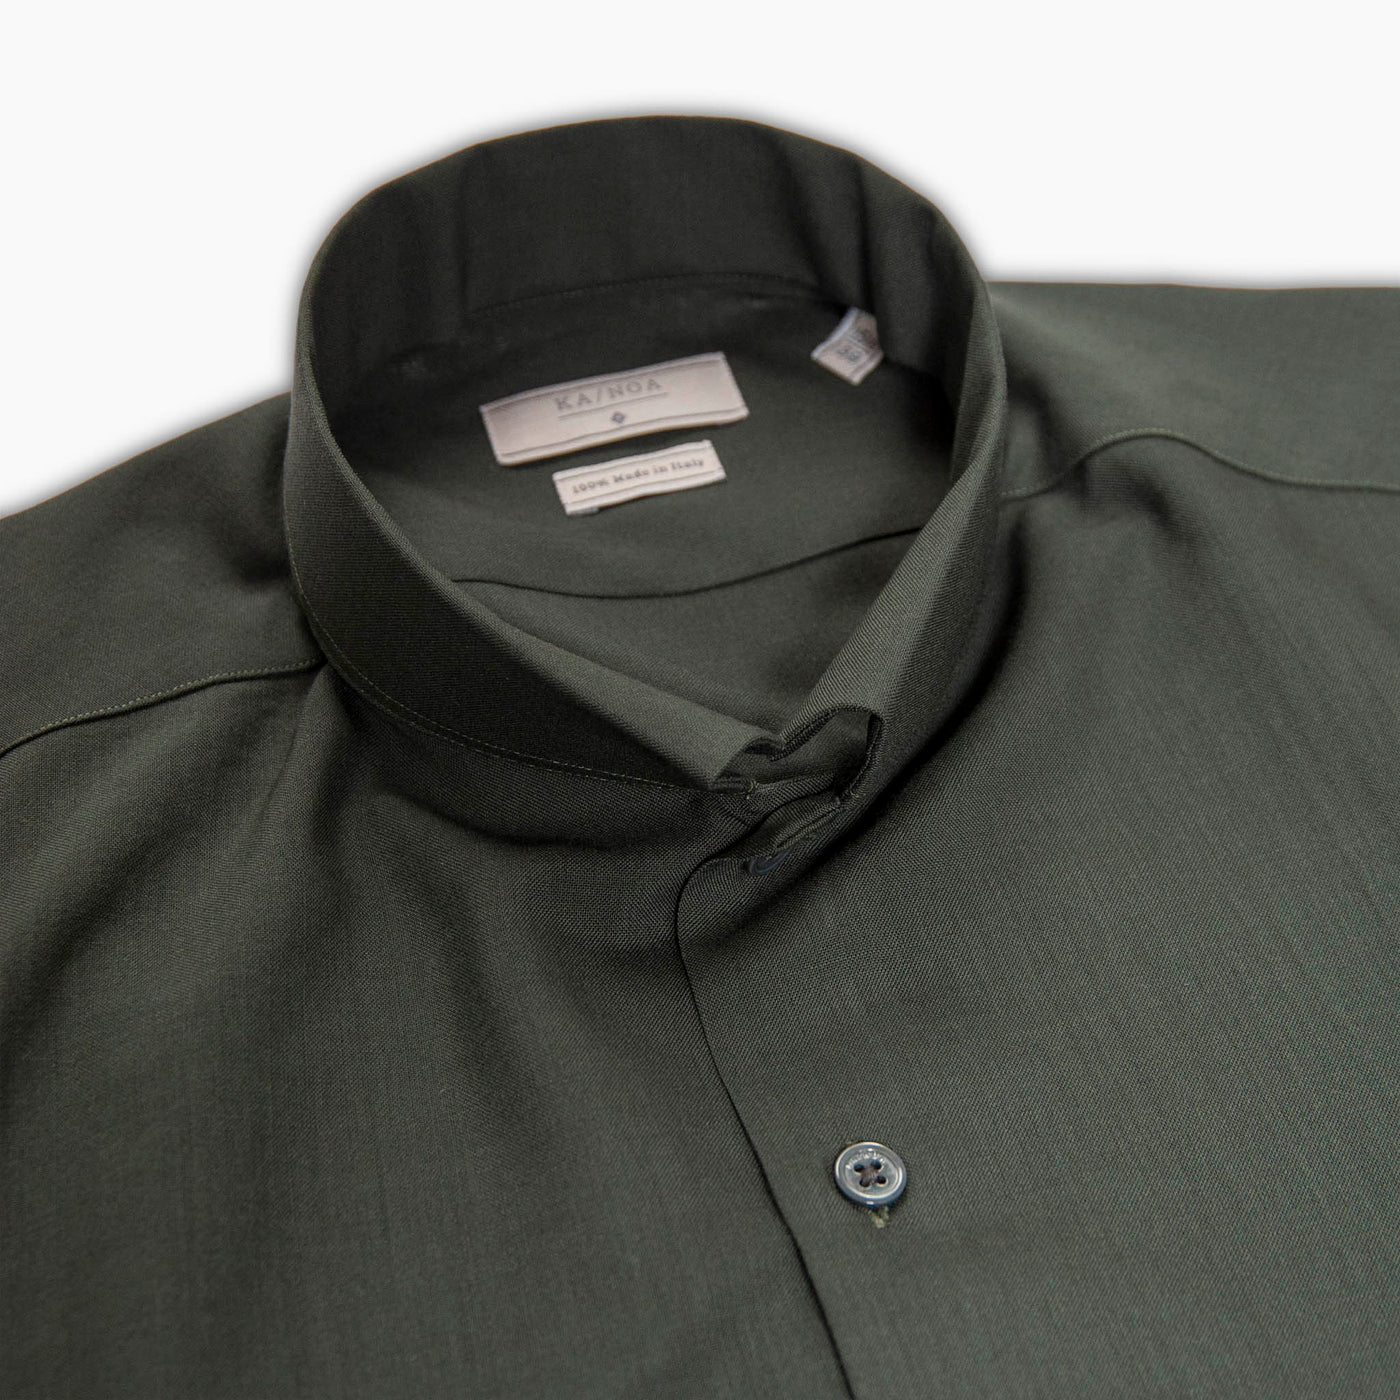 Conrad shirt twill wool (green forest)